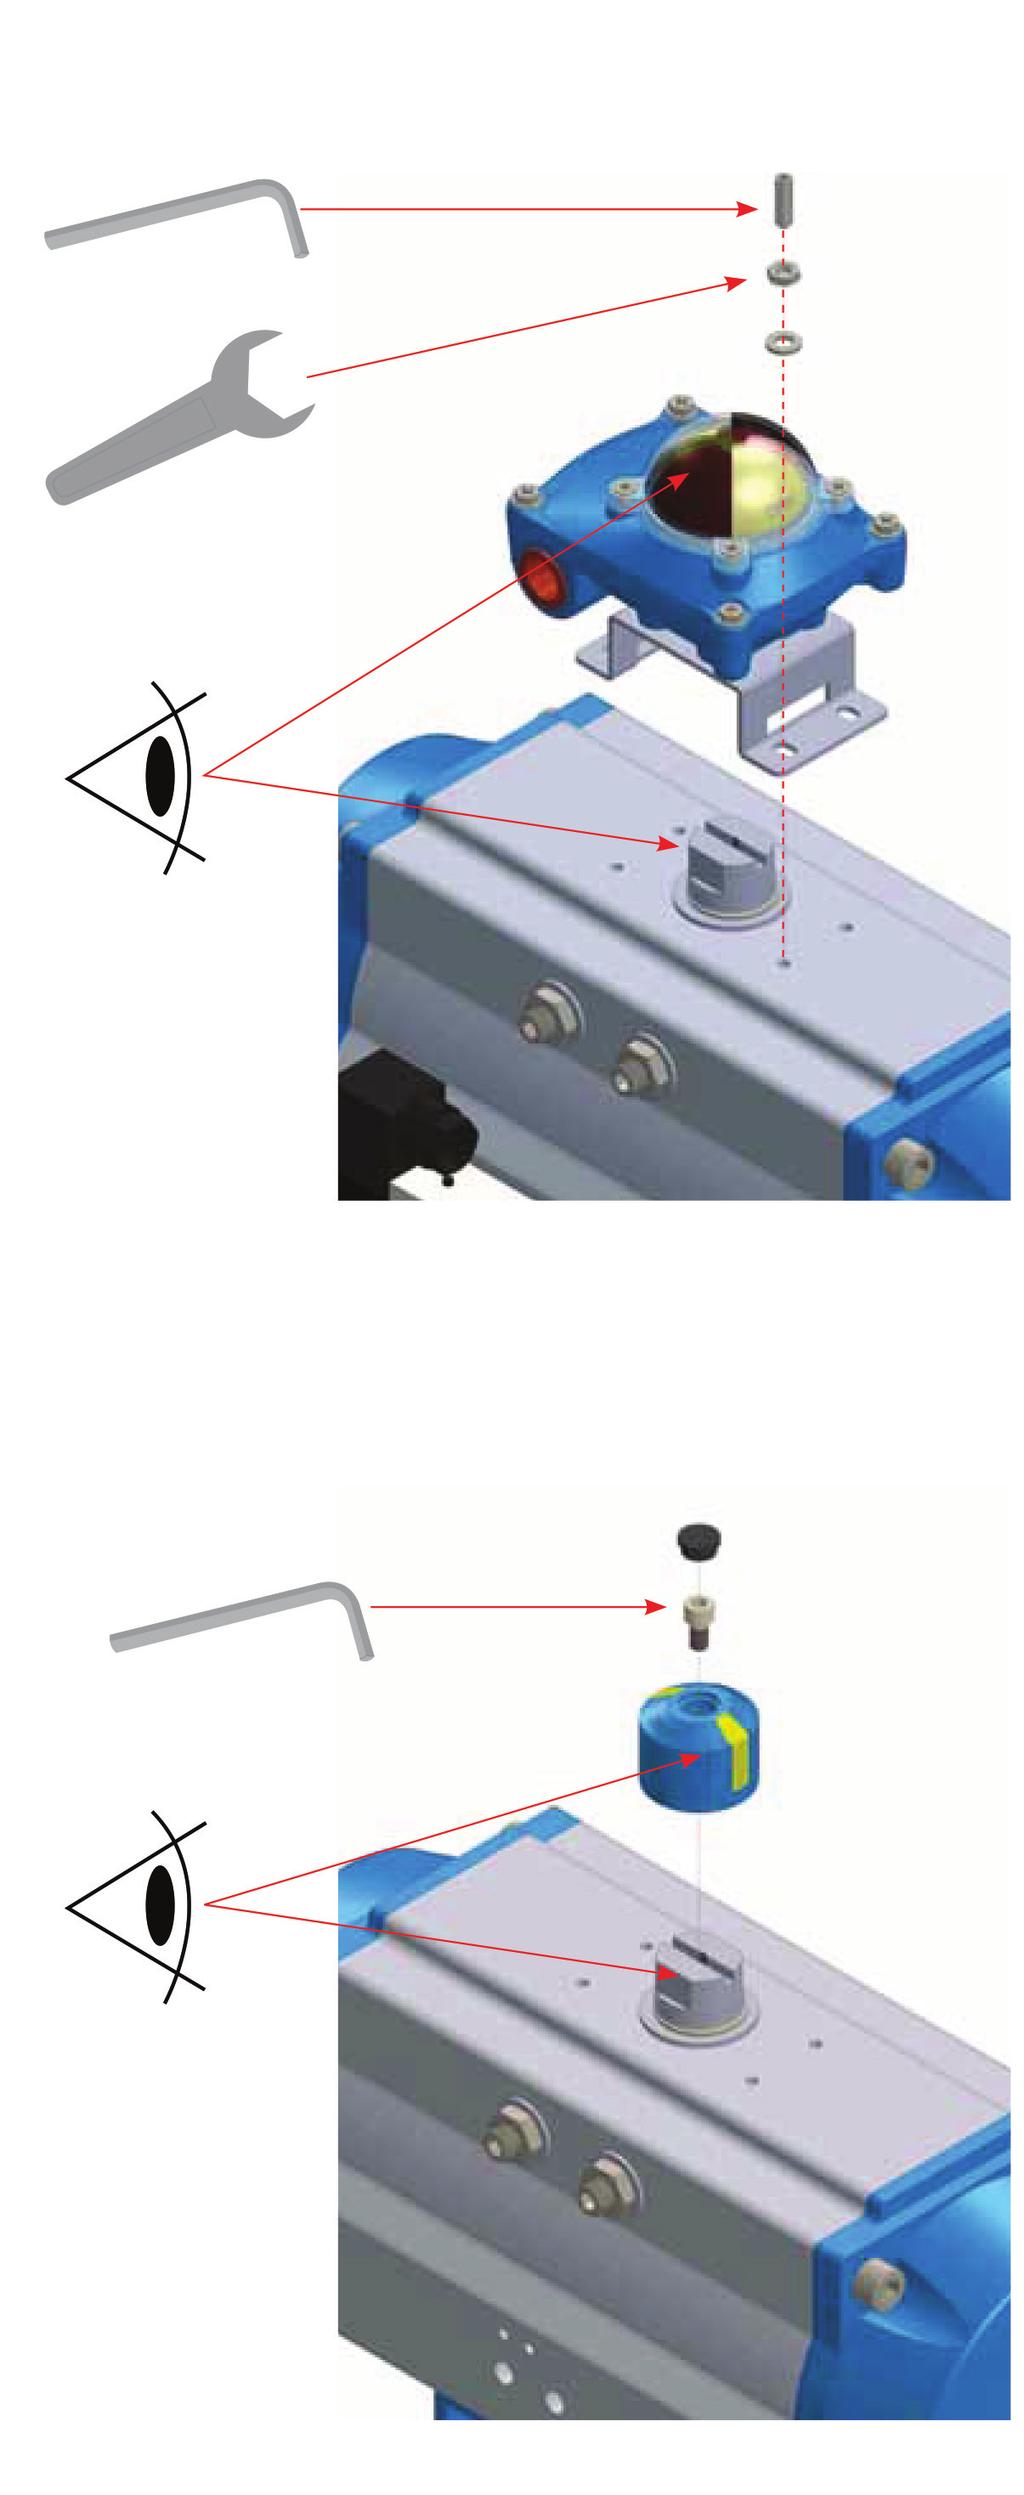 d. Aktüatöre Anahtar Kutusu (Switch Box) Bağlantısı I. Solenoidi aktüatöre vida ile, uygun aletle sıkarak, monte ediniz.